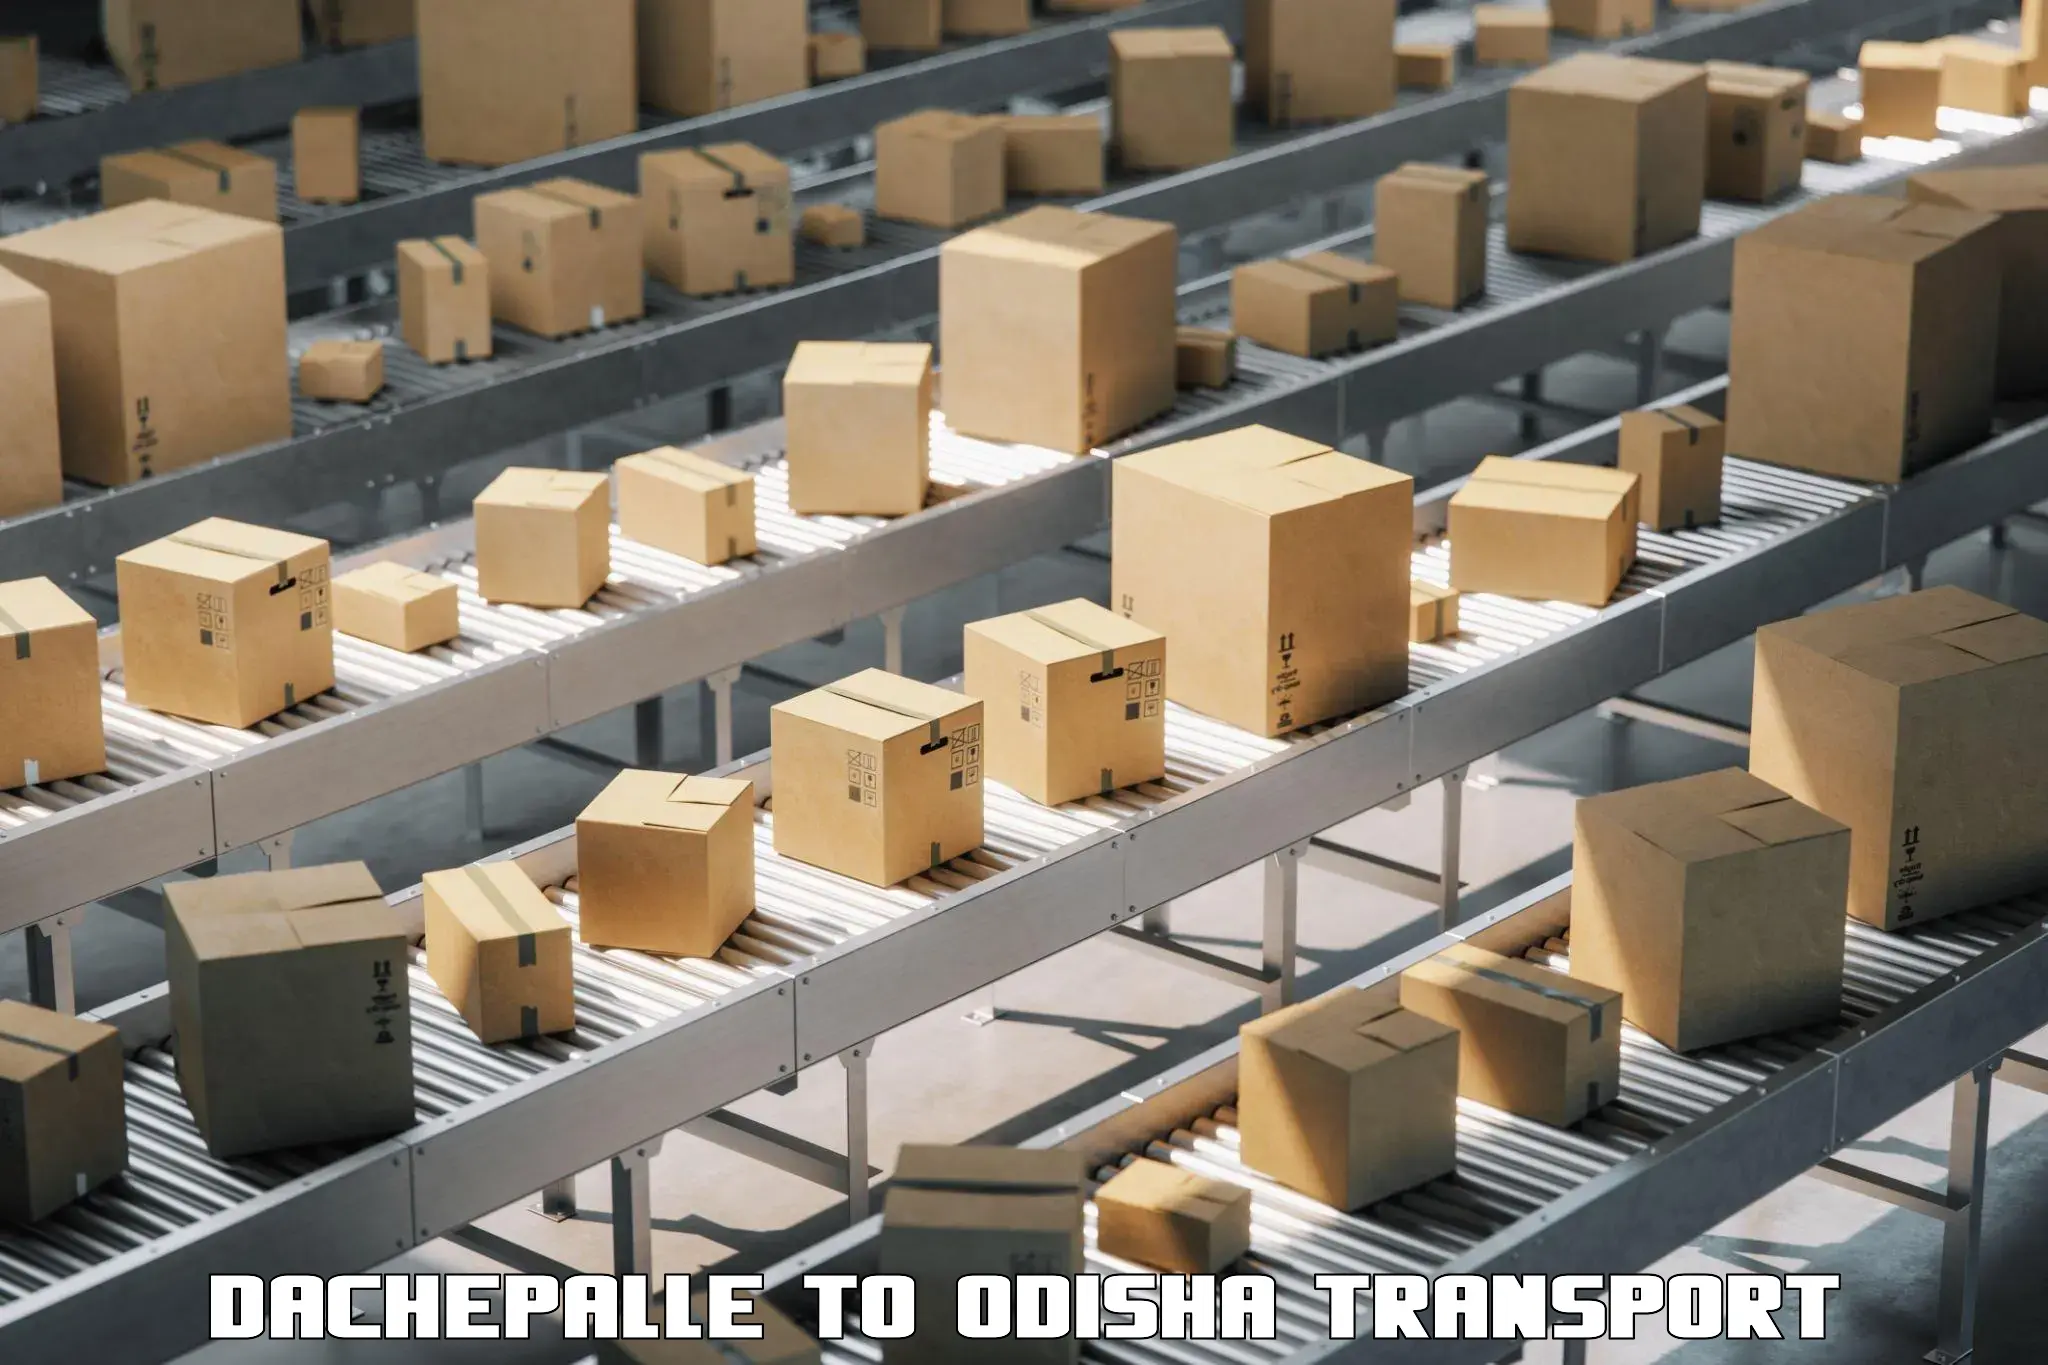 Cargo transport services Dachepalle to Dhamanagar